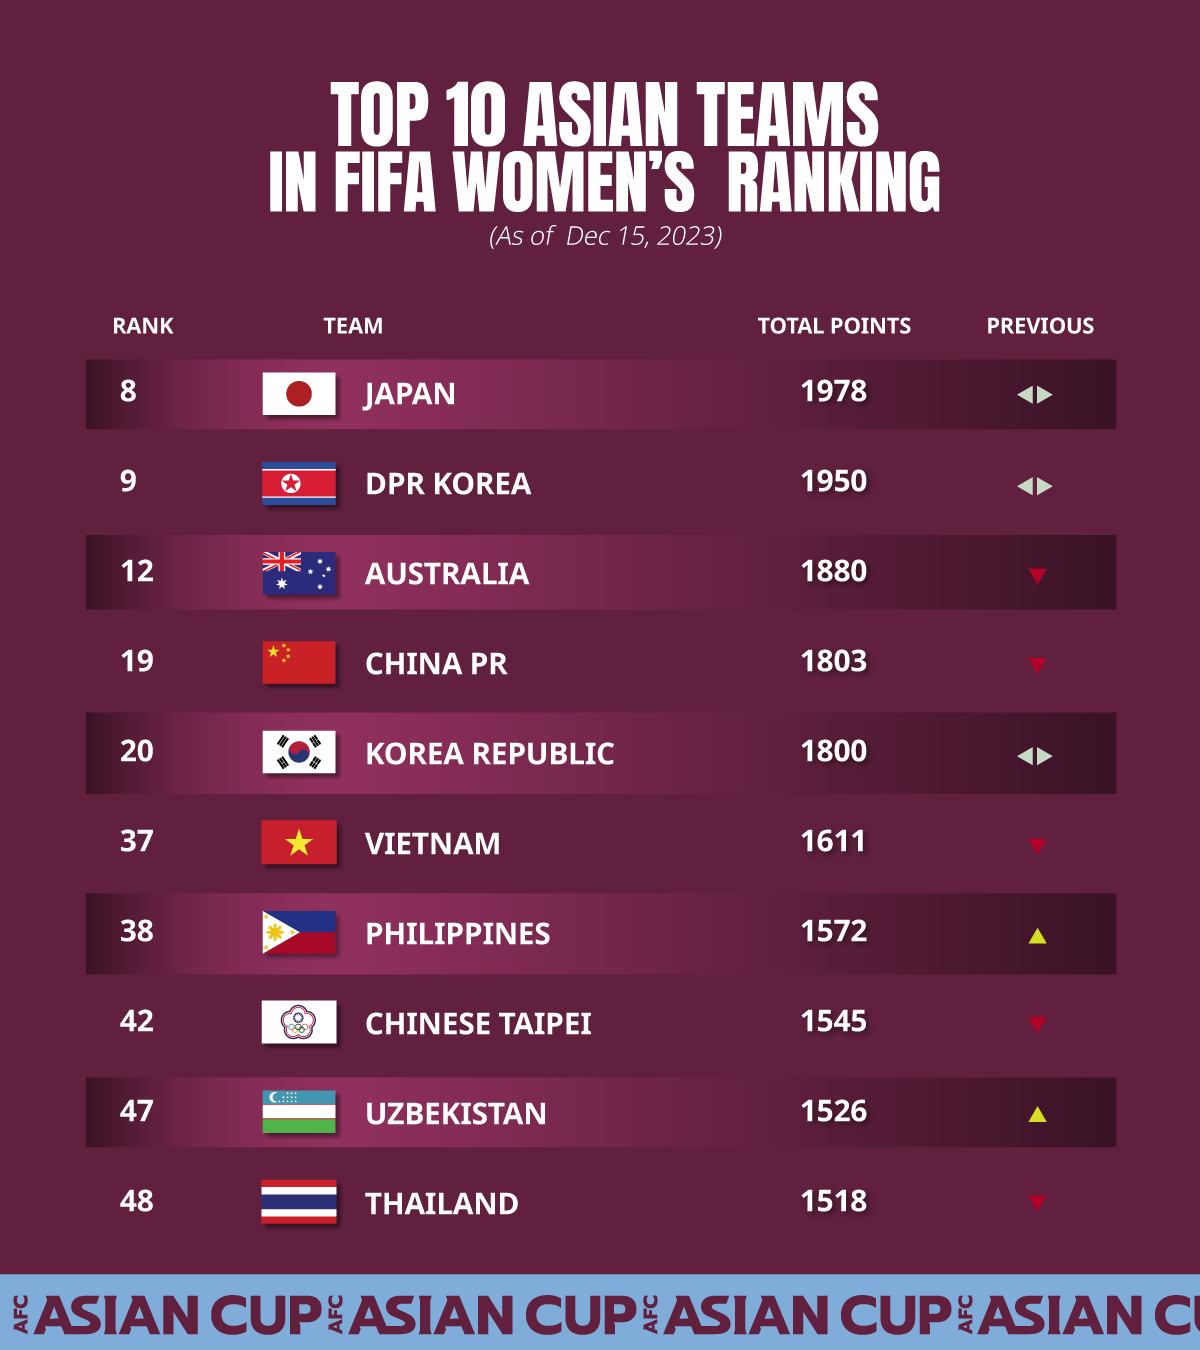 Đội tuyển nữ Philippines và Uzbekistan đang vươn lên mạnh mẽ